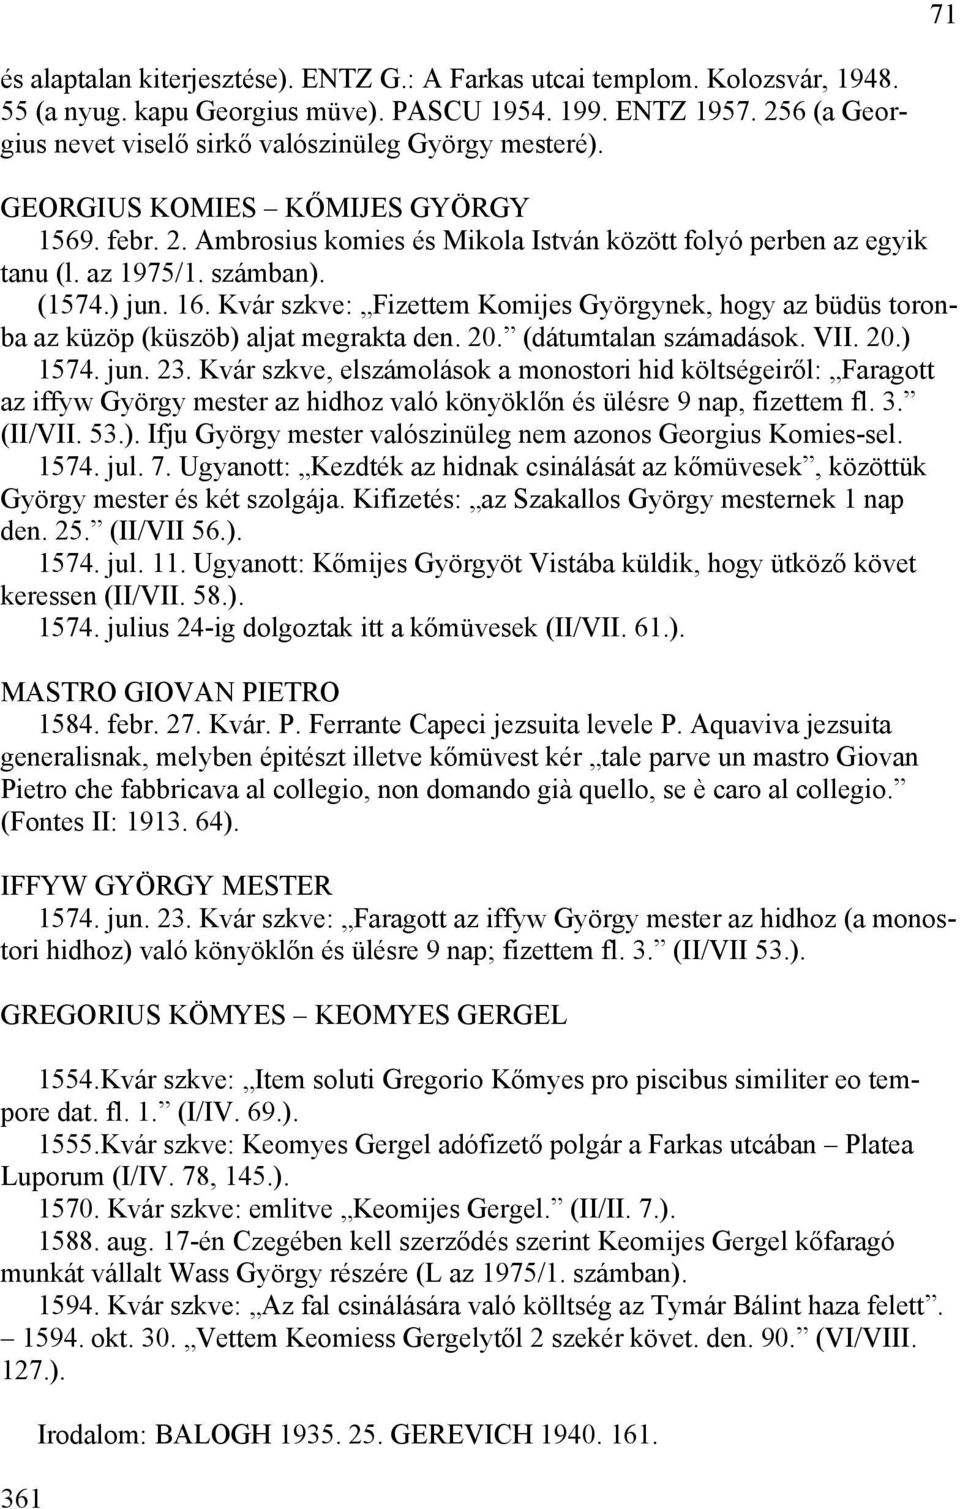 számban). (1574.) jun. 16. Kvár szkve: Fizettem Komijes Györgynek, hogy az büdüs toronba az küzöp (küszöb) aljat megrakta den. 20. (dátumtalan számadások. VII. 20.) 1574. jun. 23.